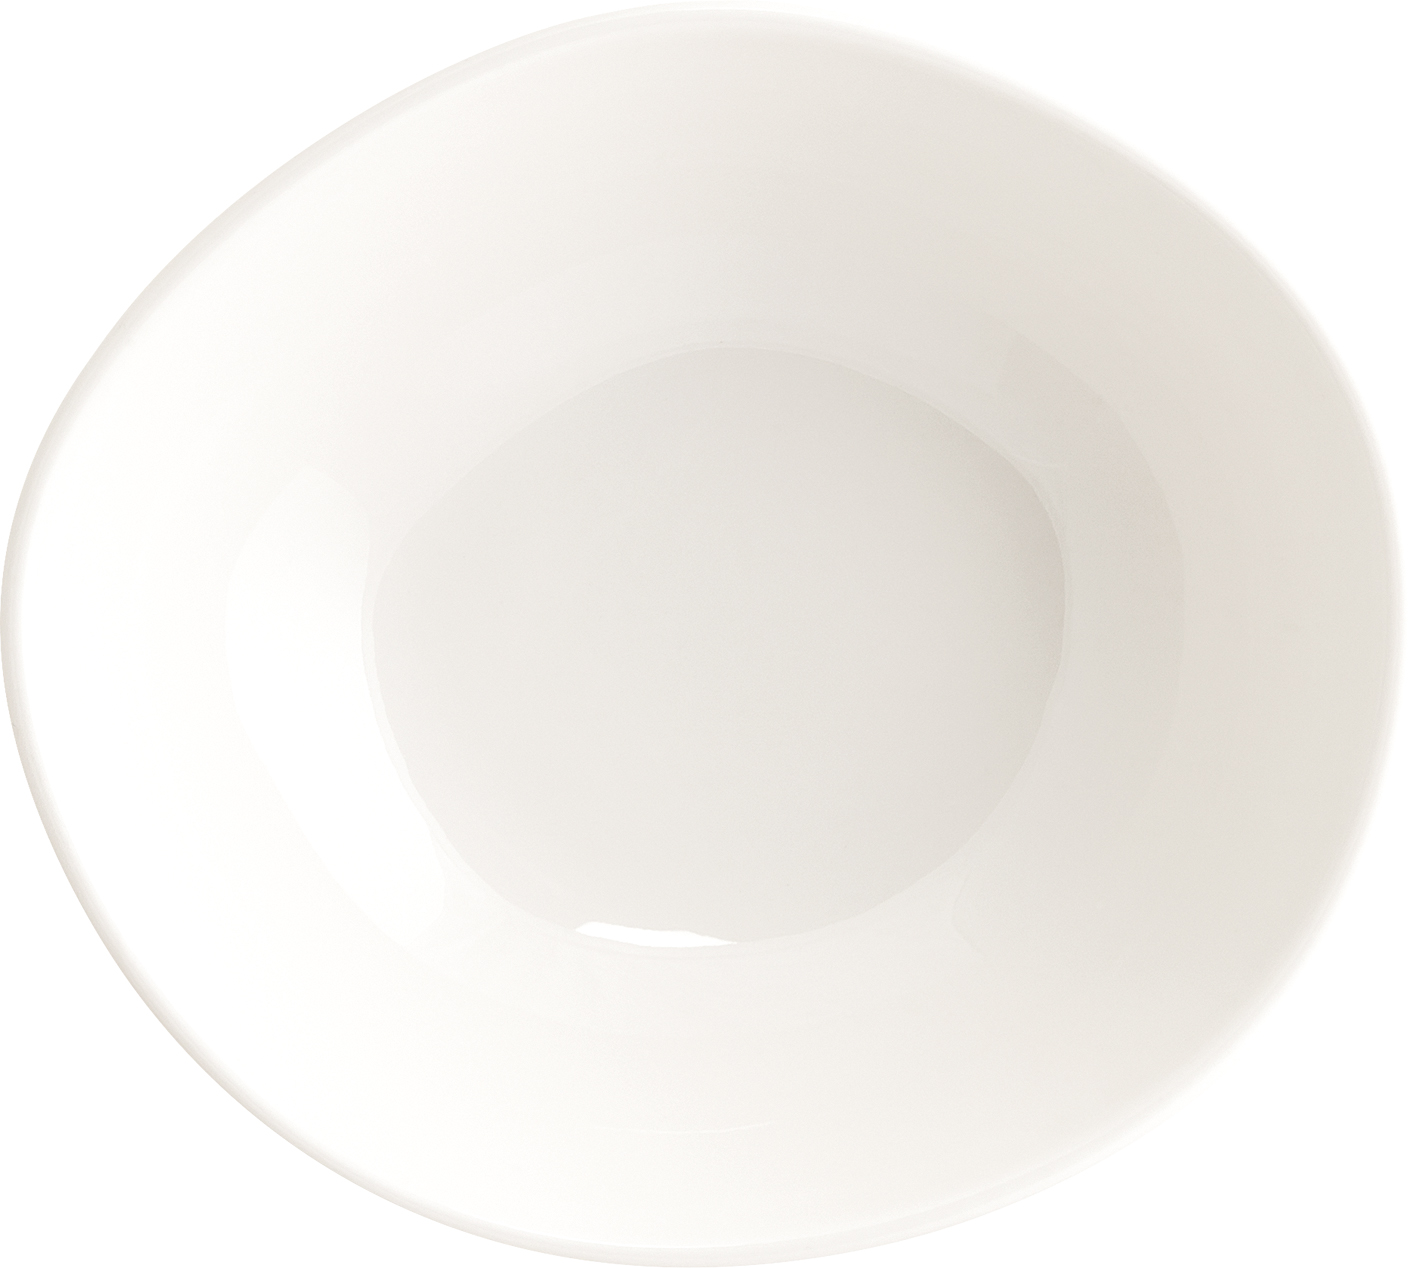 Vago Cream Schälchen 18cm, Bonna Premium Porcelain